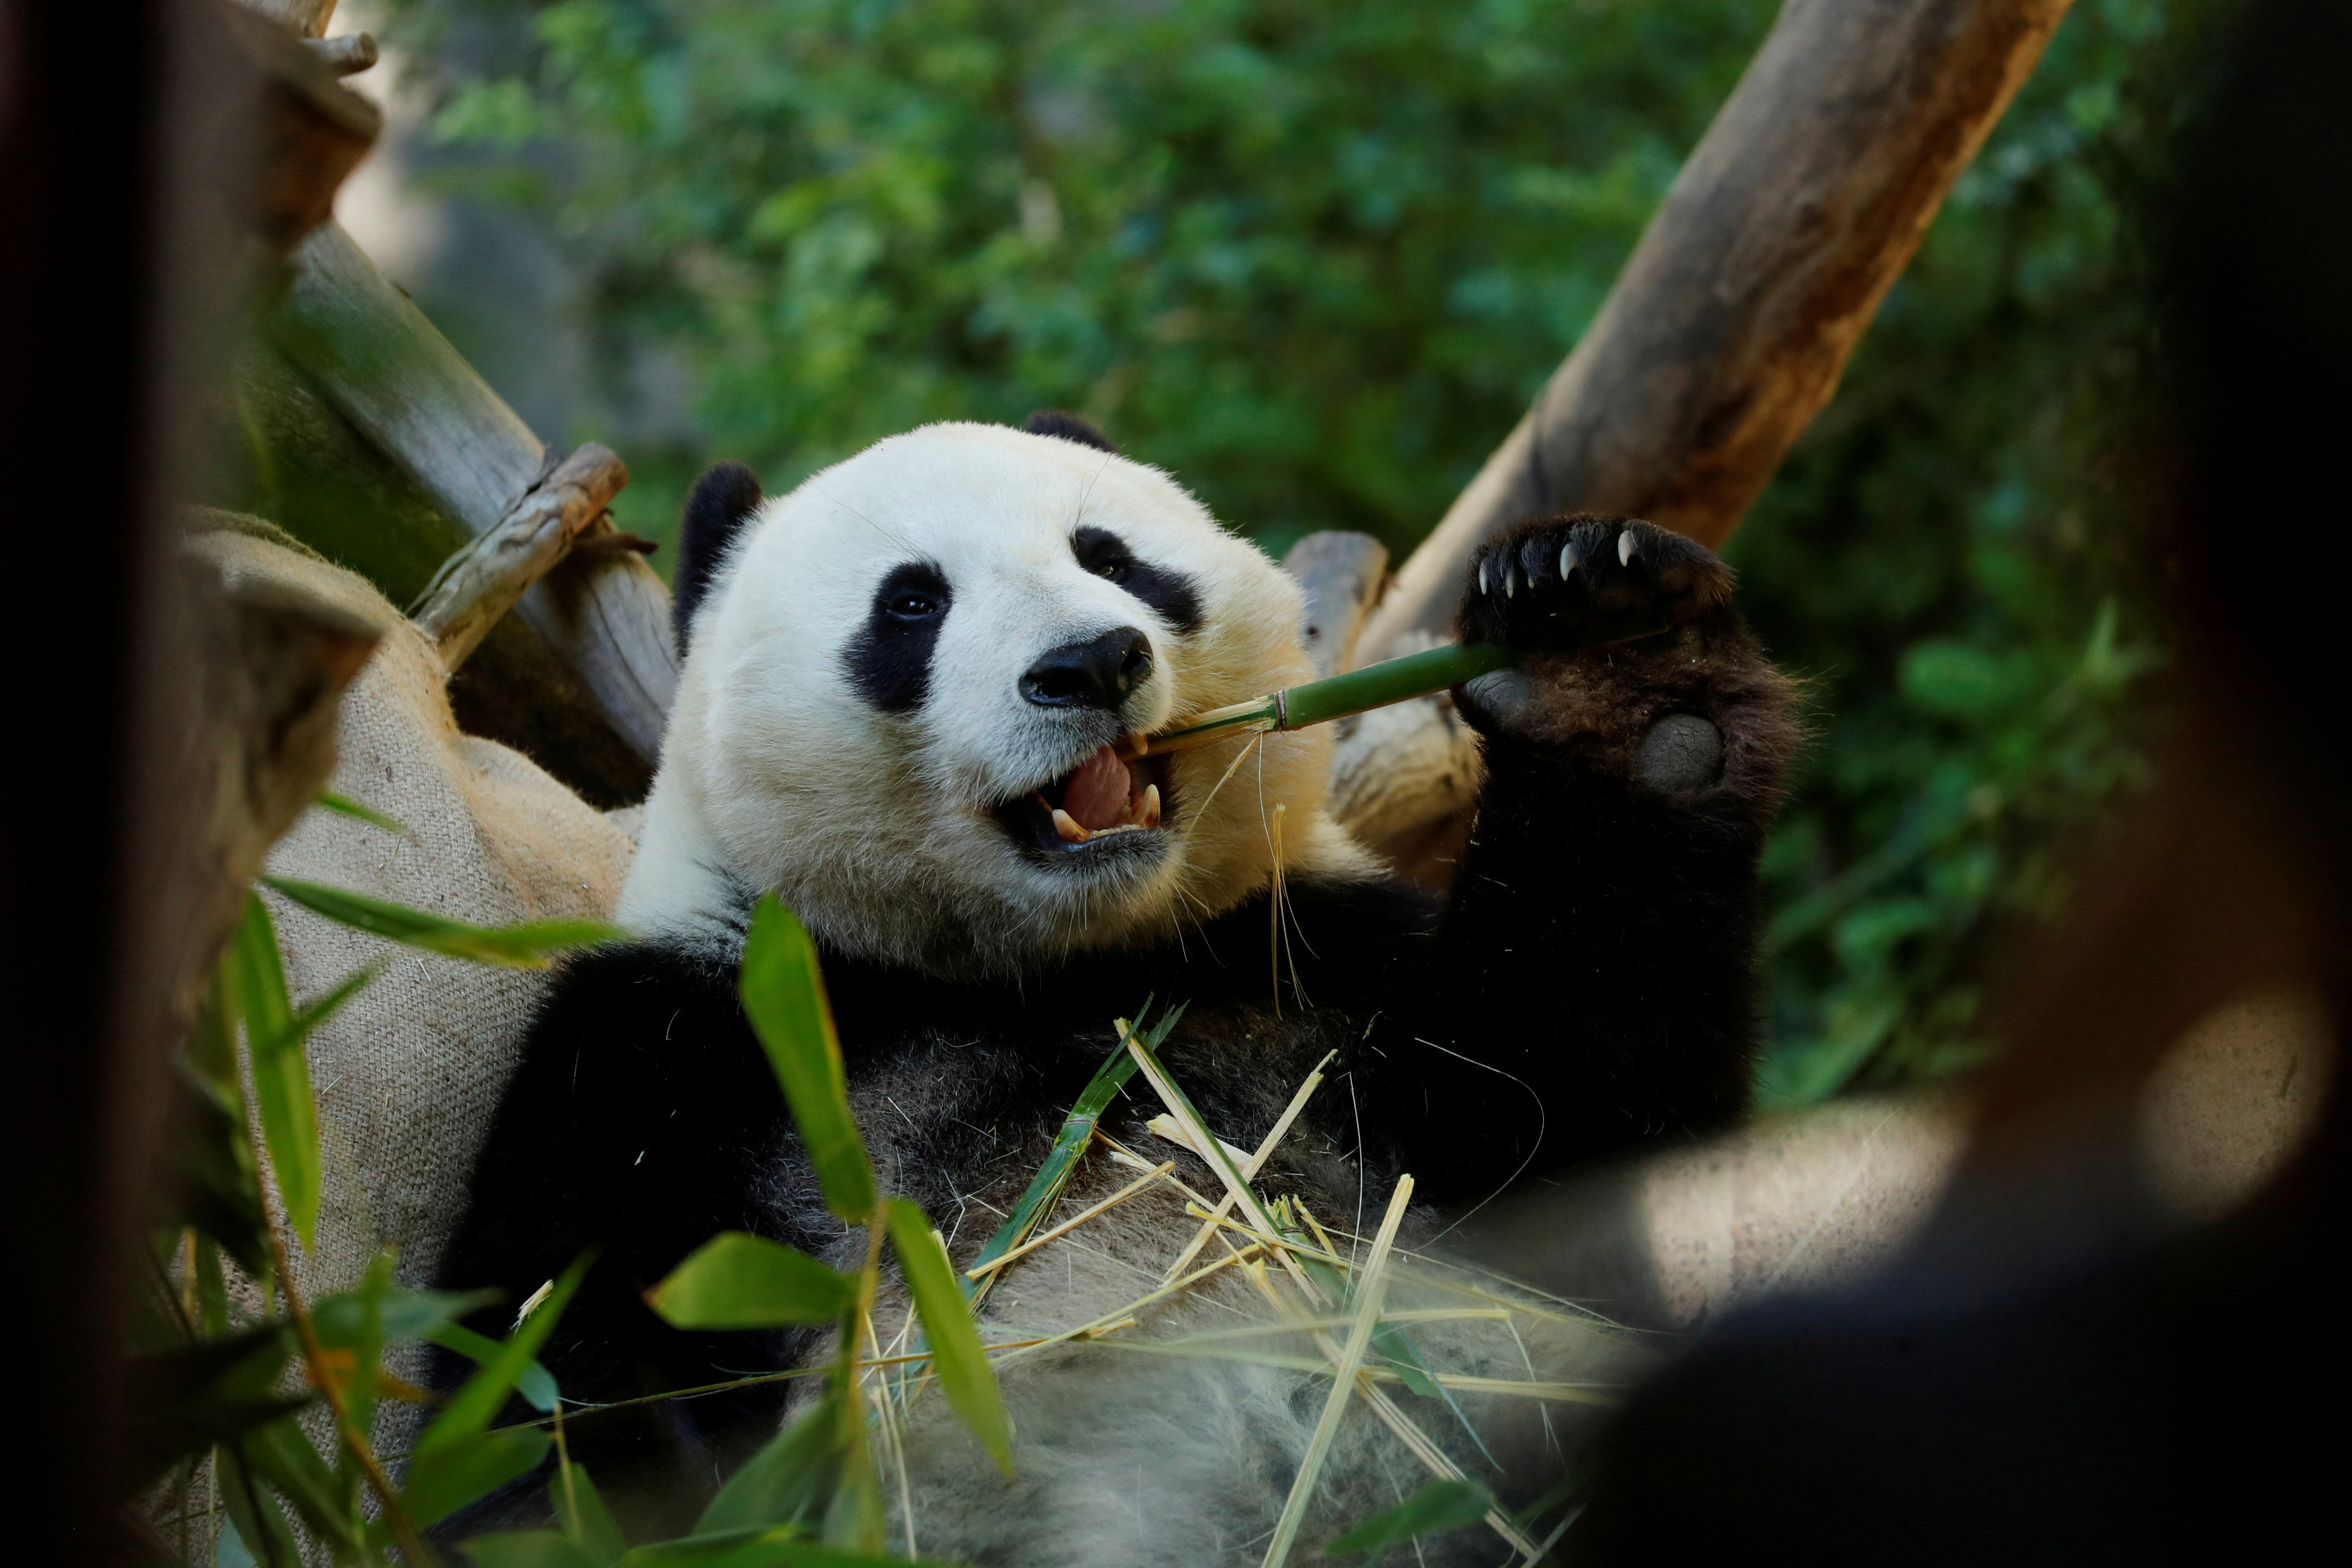 “El ‘falso pulgar’ del Ailurarctos muestra (...) por primera vez la cronología y las probables etapas de la evolución de la alimentación del bambú en los pandas”, añadió. REUTERS/Mike Blake/File Photo